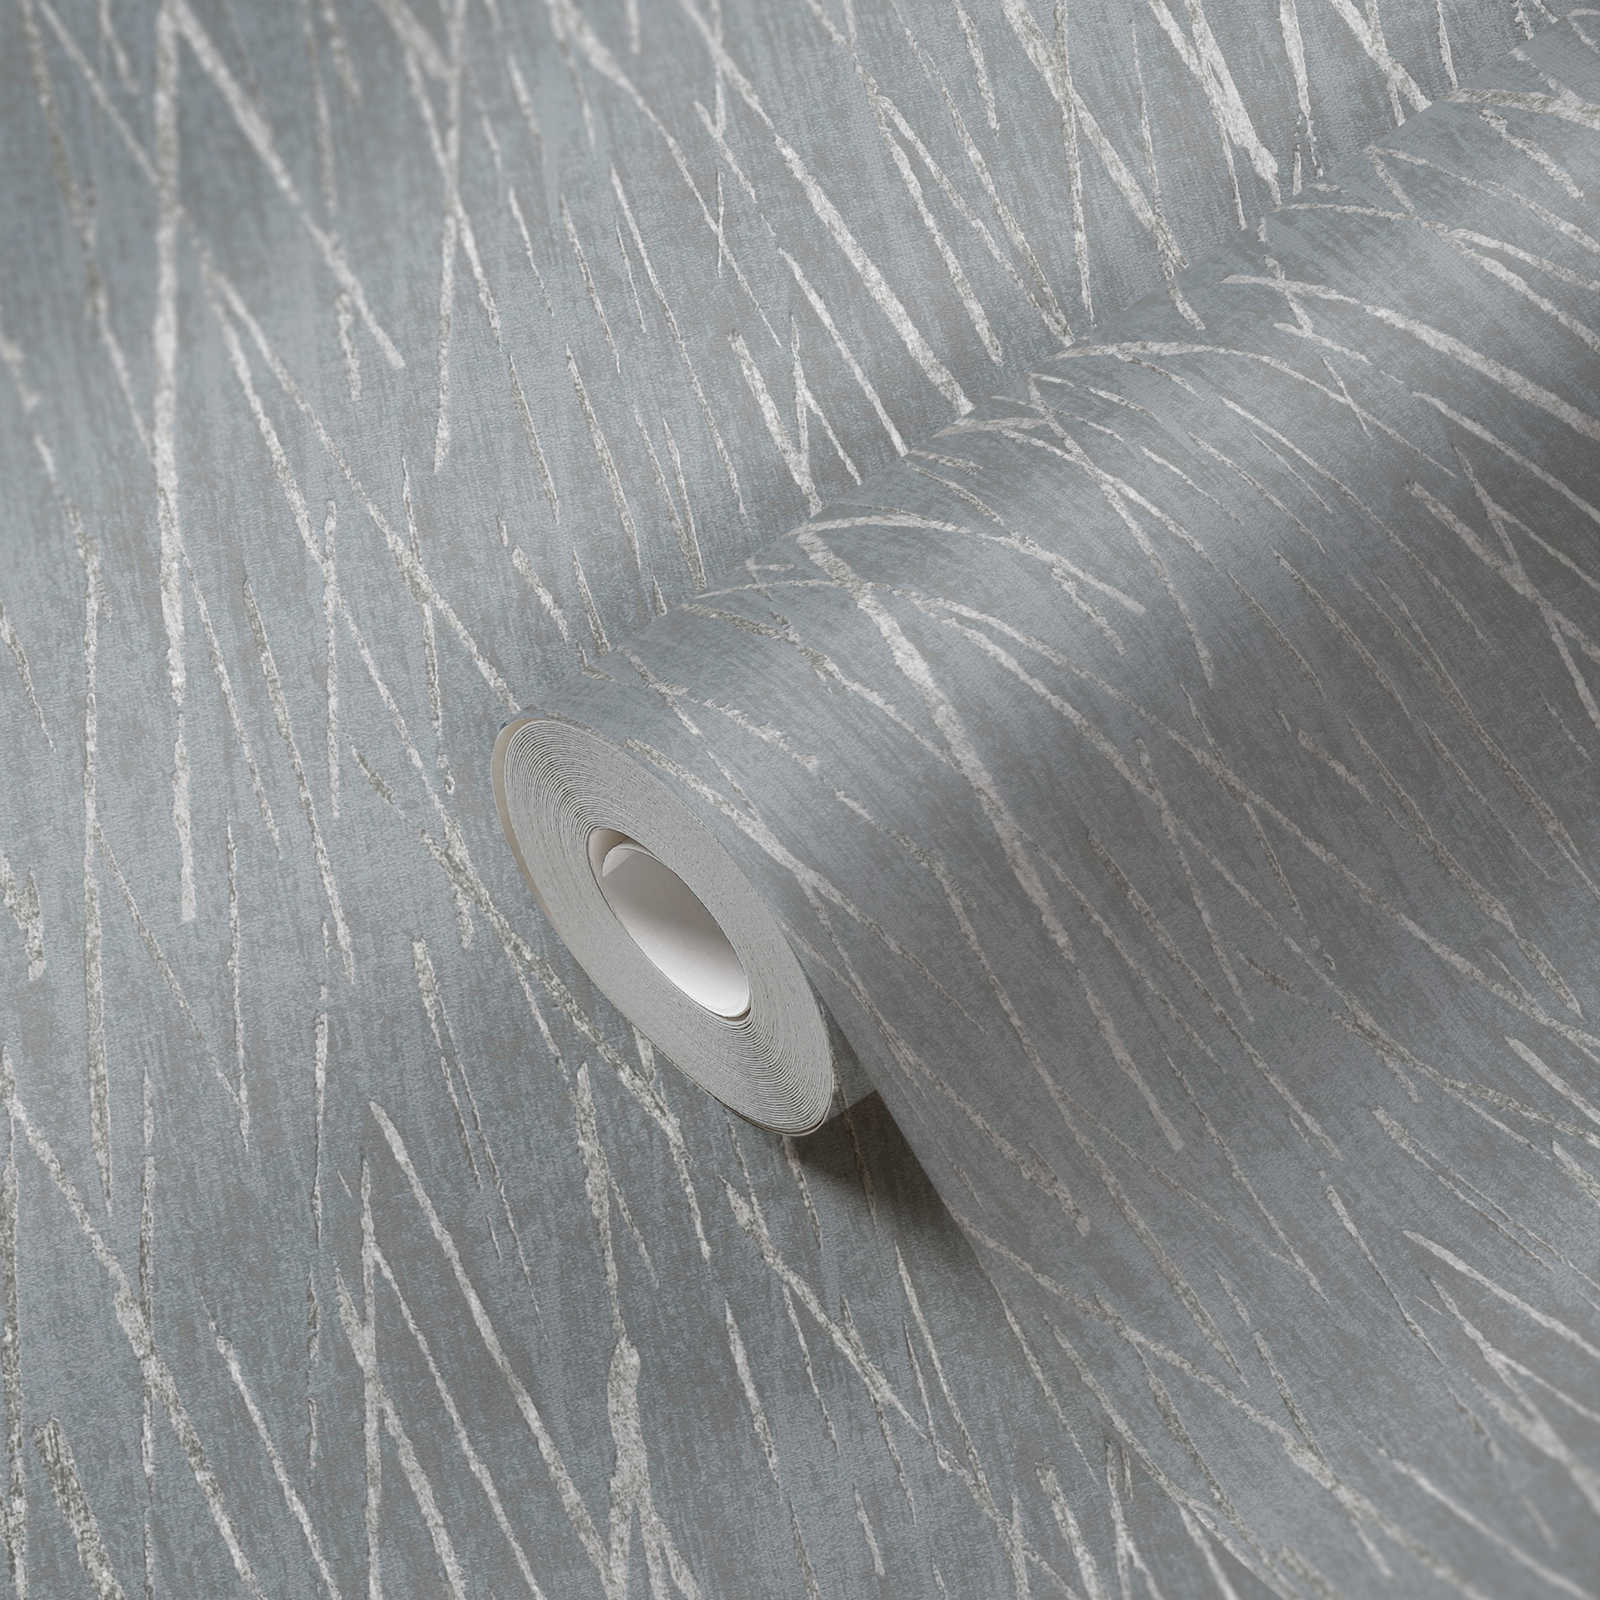             Vliestapete mit Naturdesign und Metallic Effekt – Grau, Metallic
        